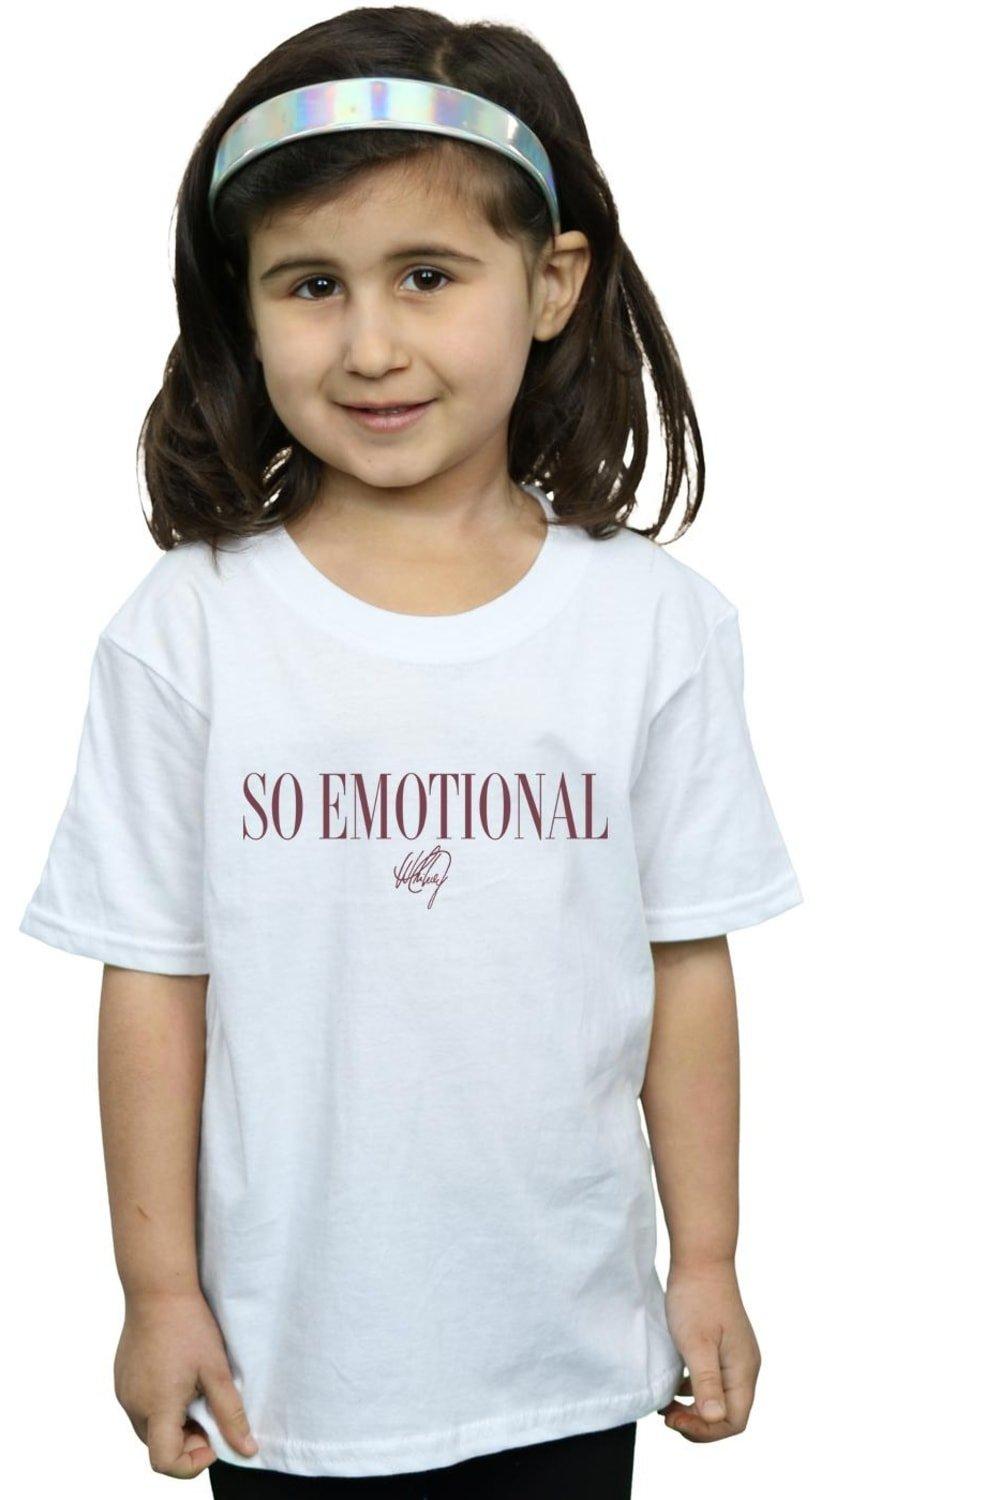 Хлопковая футболка So Emotional Whitney Houston, белый хлопковая футболка в стиле 90 х годов whitney houston белый